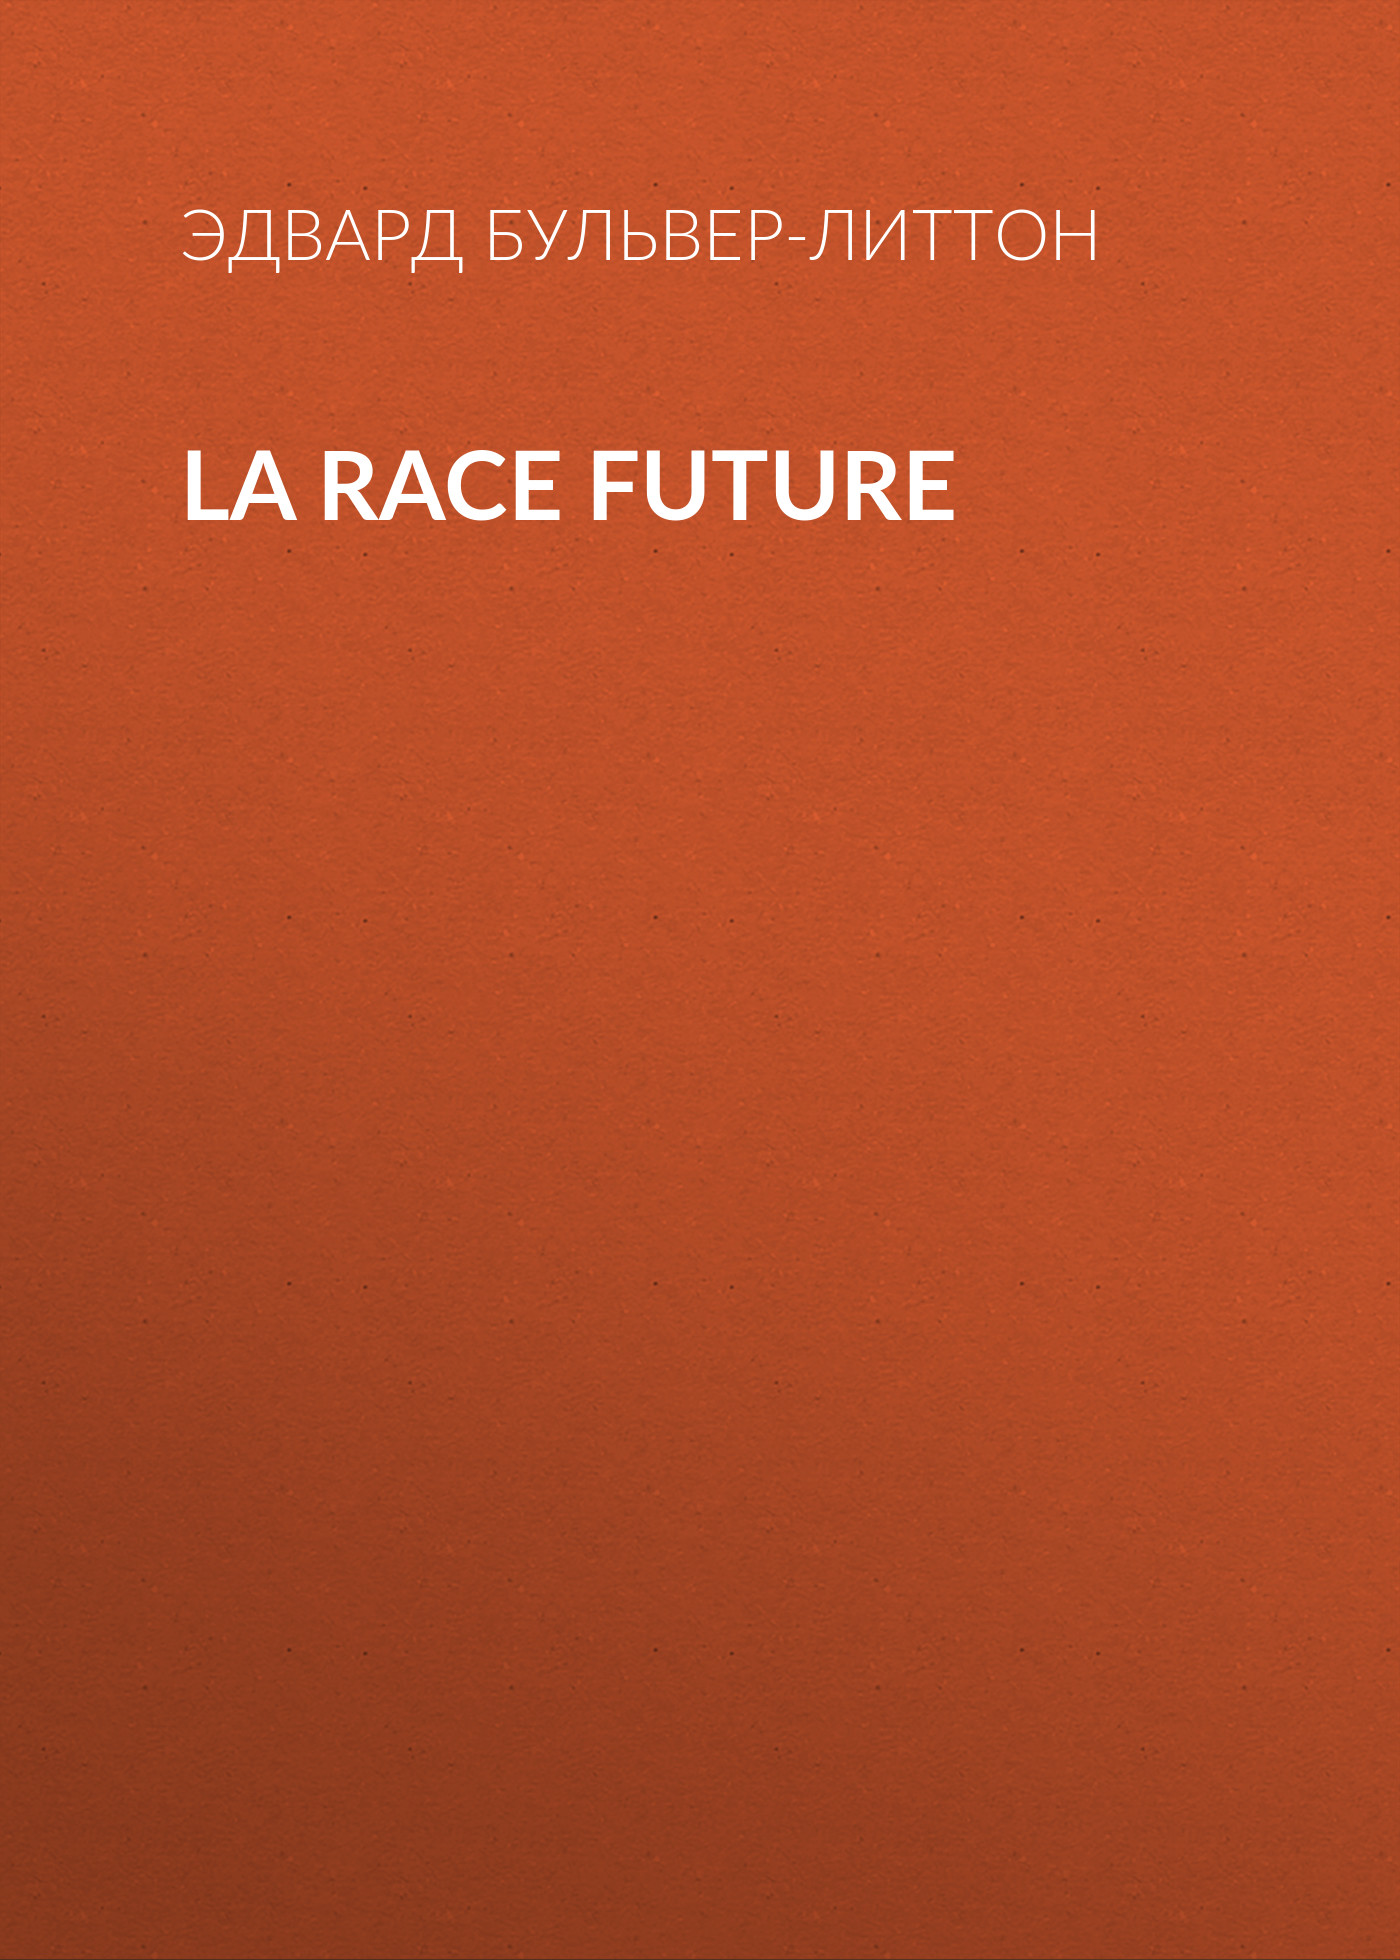 Книга La race future из серии , созданная Эдвард Бульвер-Литтон, может относится к жанру Зарубежная классика, Литература 19 века, Европейская старинная литература, Зарубежная старинная литература. Стоимость электронной книги La race future с идентификатором 35009009 составляет 0 руб.